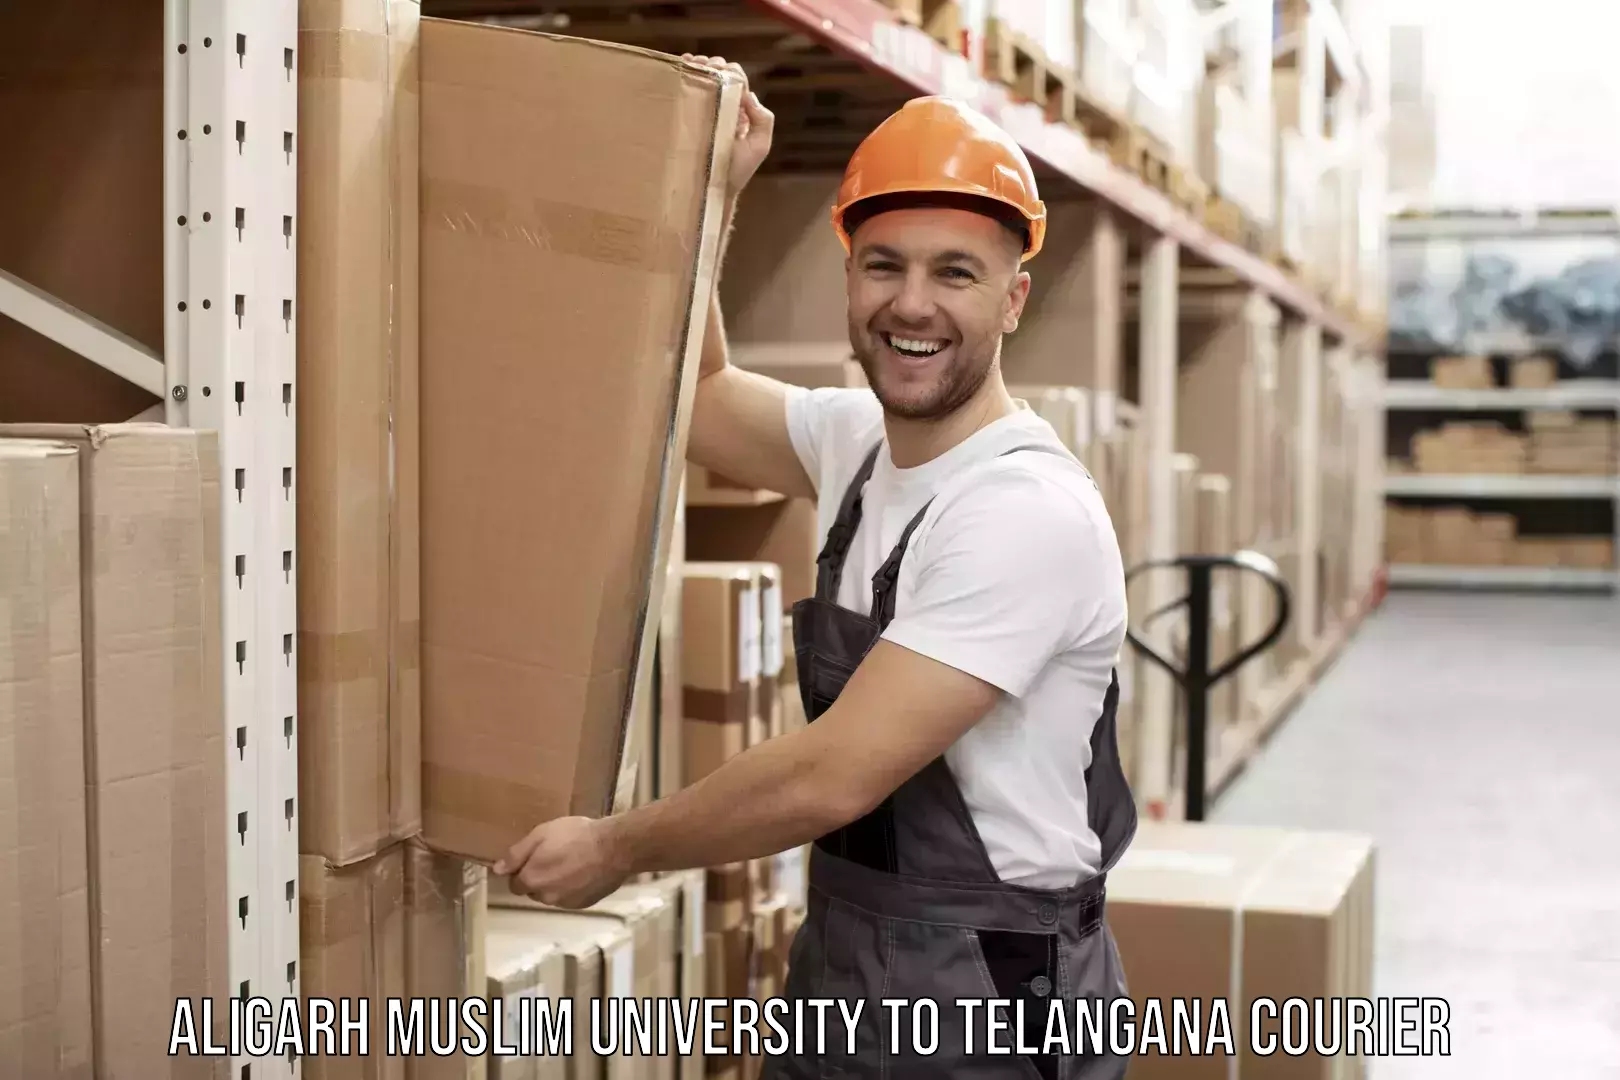 Full-service furniture transport Aligarh Muslim University to Manuguru